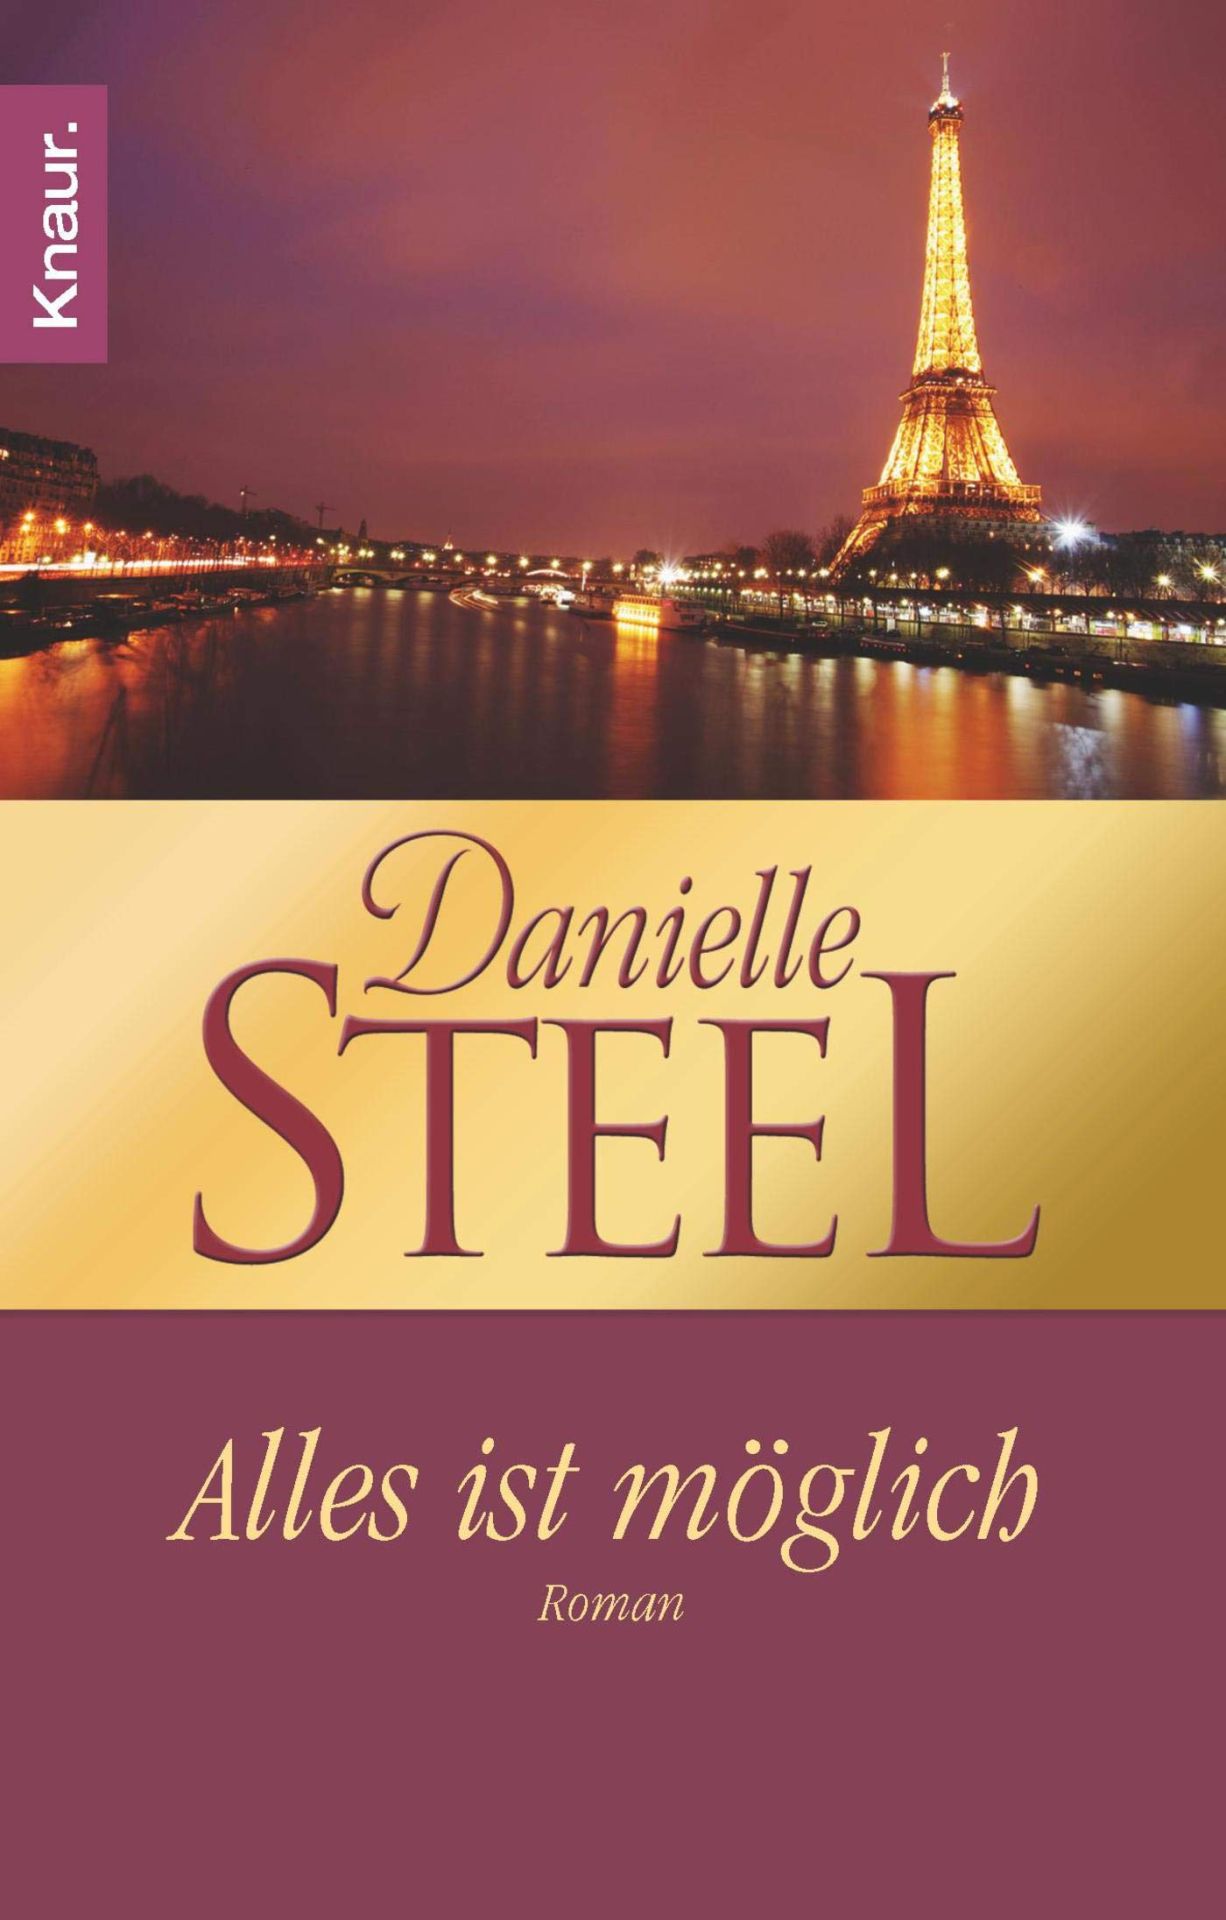 Alles ist möglich Roman - Steel, Danielle und Silvia Kinkel